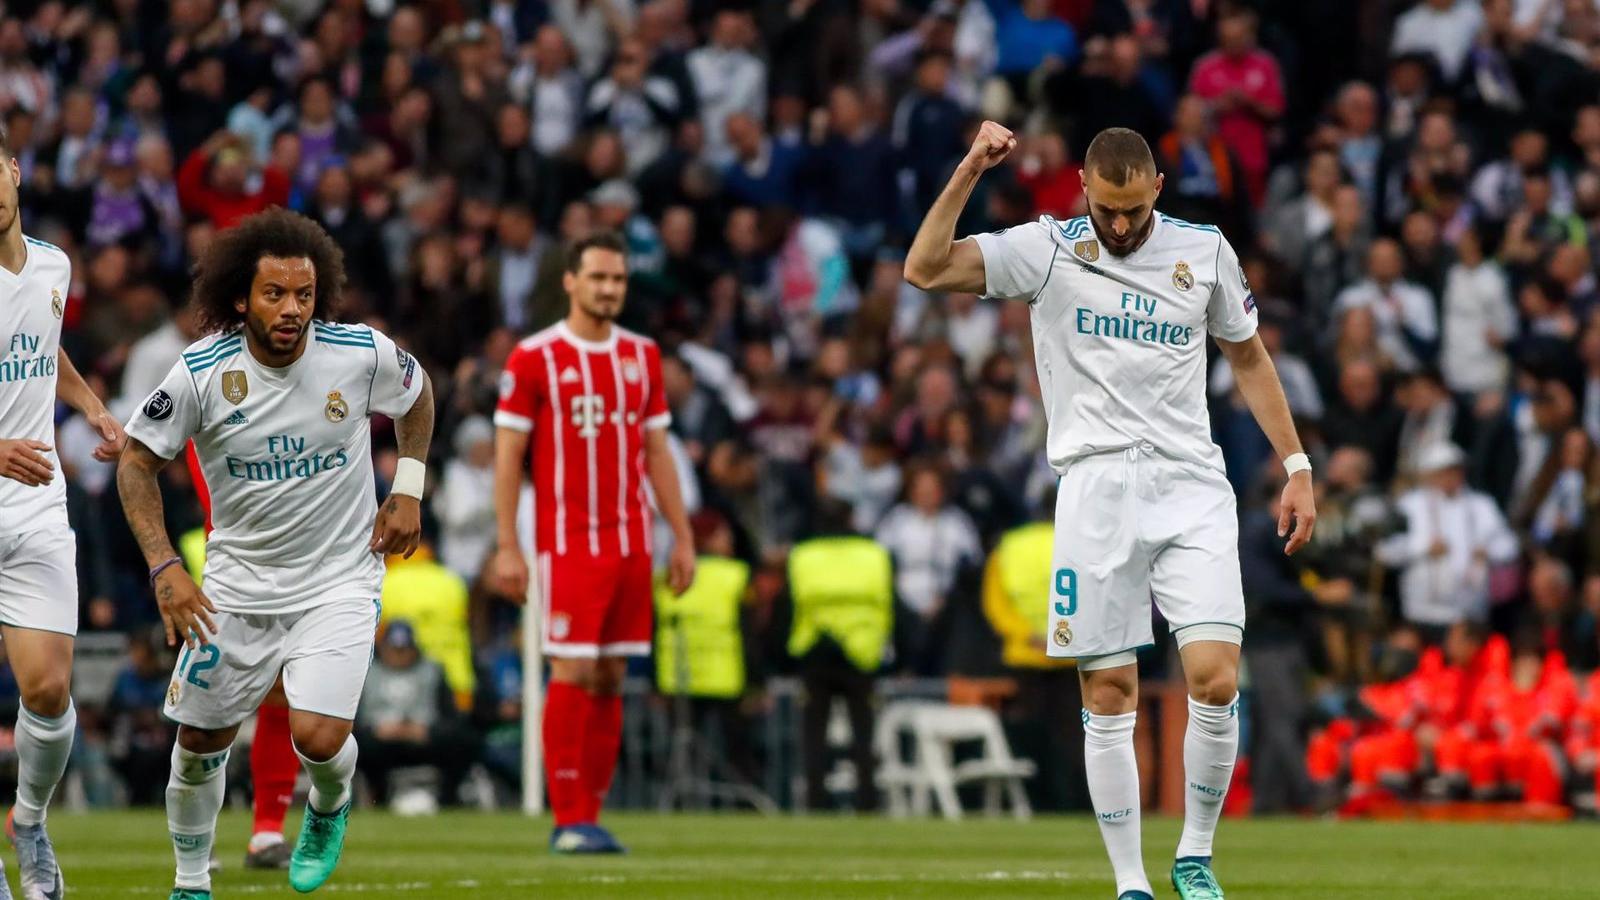 Real Madrid-Bayern cara a cara en semifinales